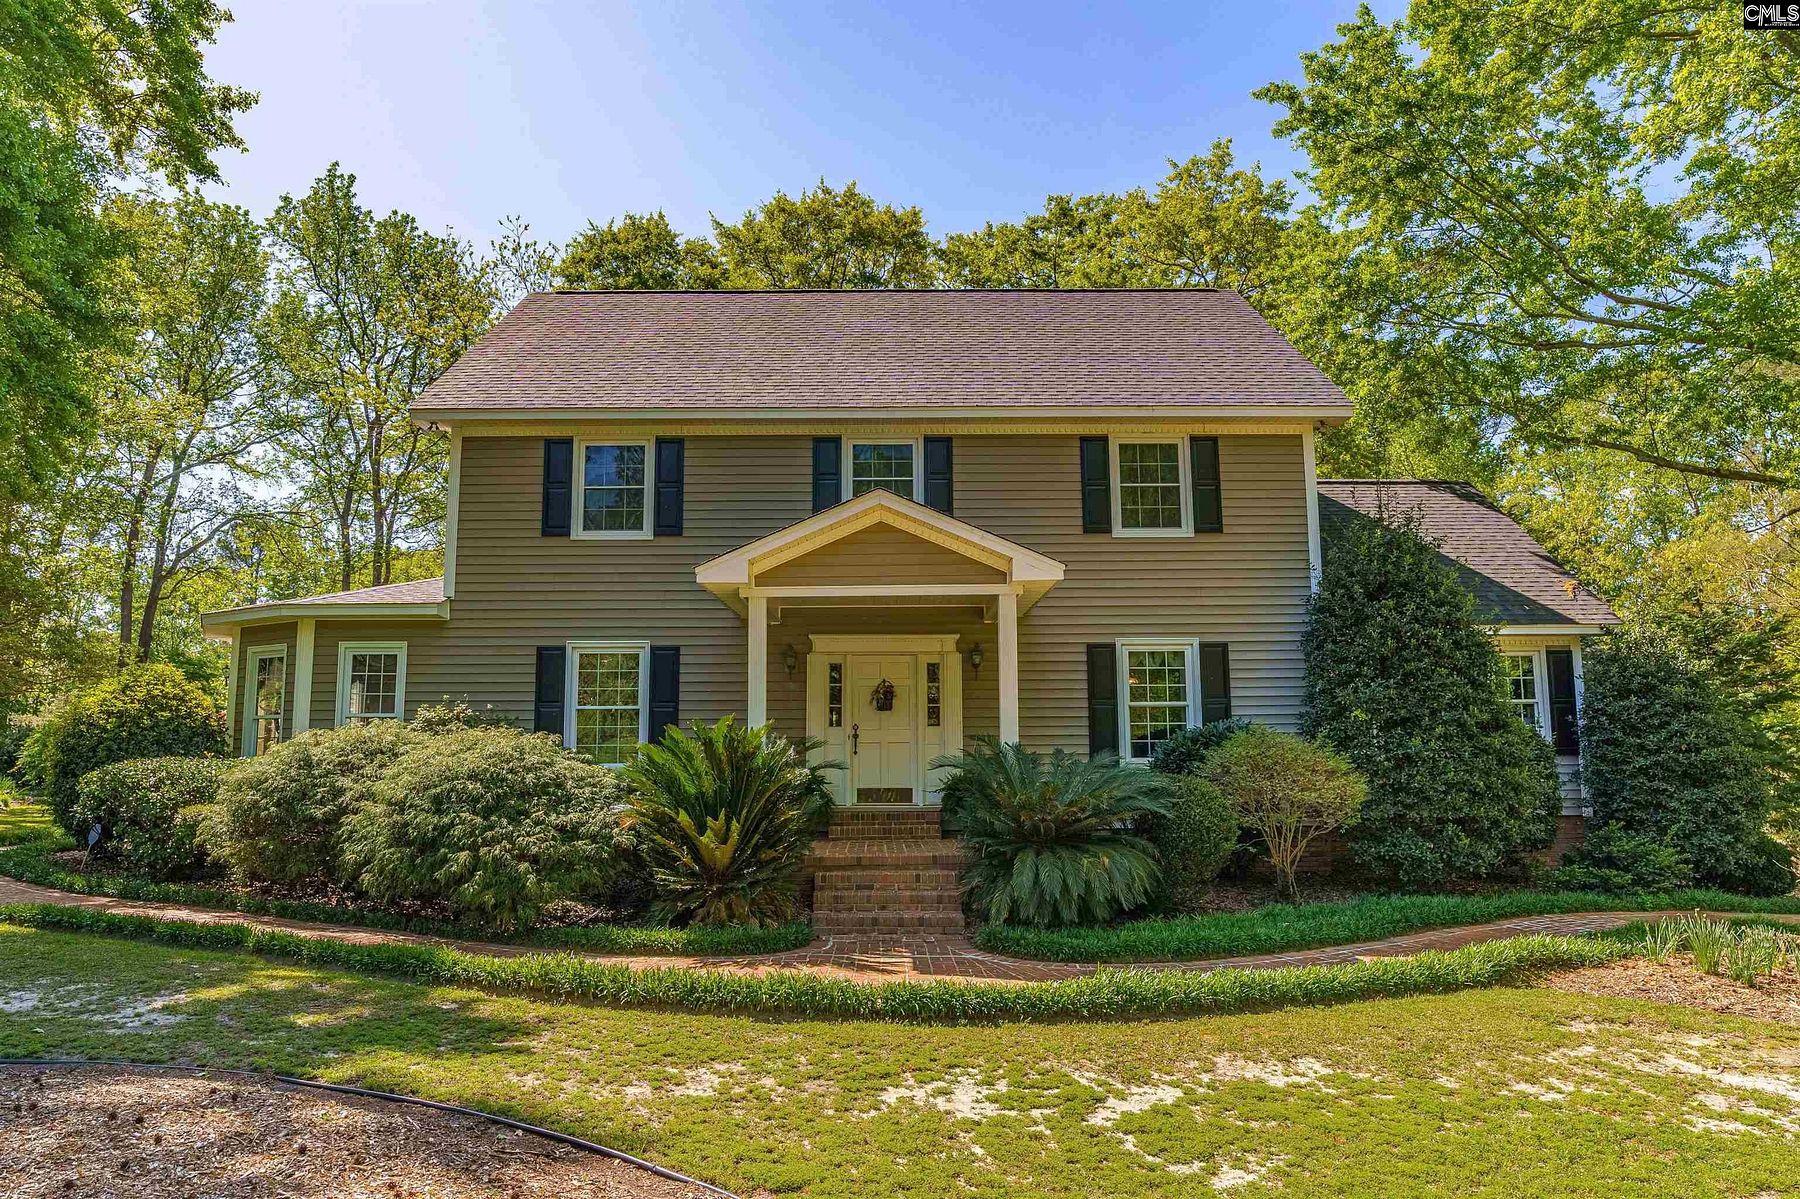 4.7 Acres of Residential Land & Home Lexington, South Carolina, SC